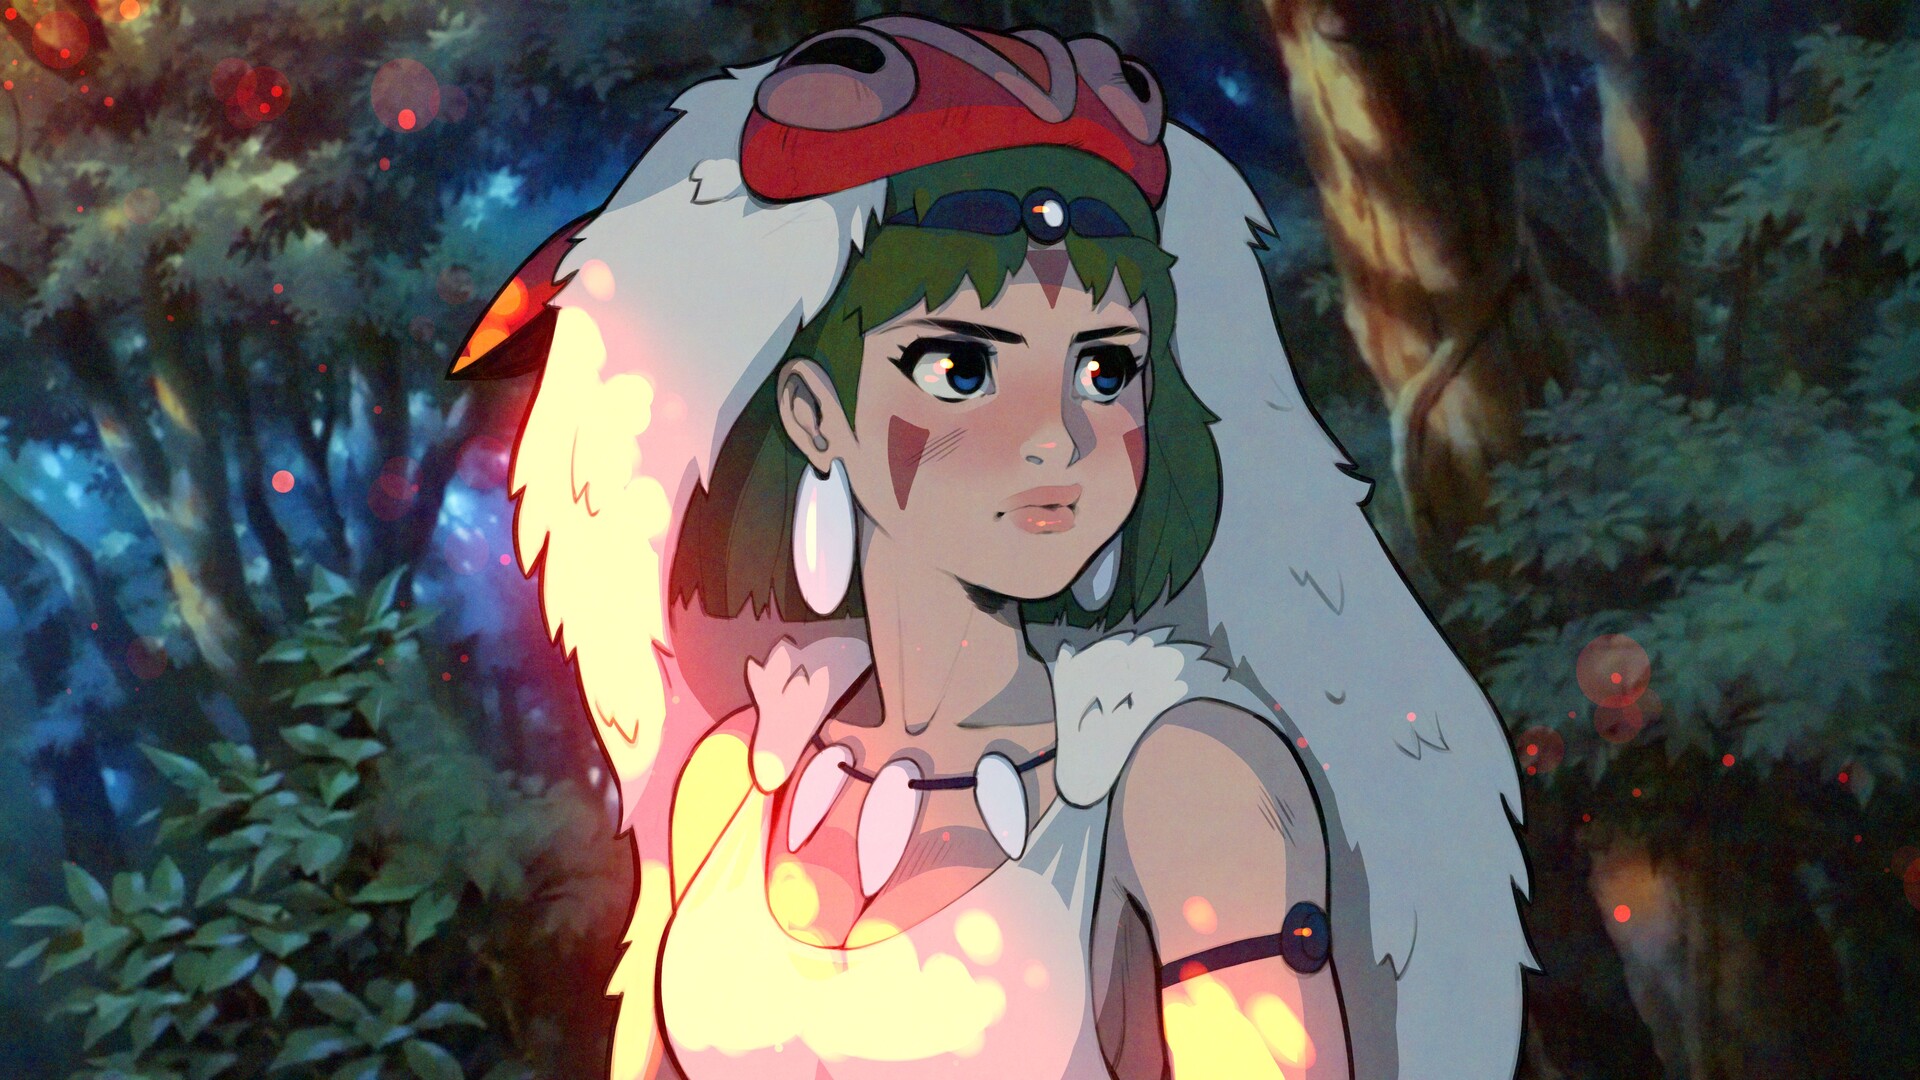 Digital Digital Art Artwork Fan Art Princess Mononoke Forest Anime Blue Eyes Brunette Looking At The 1920x1080